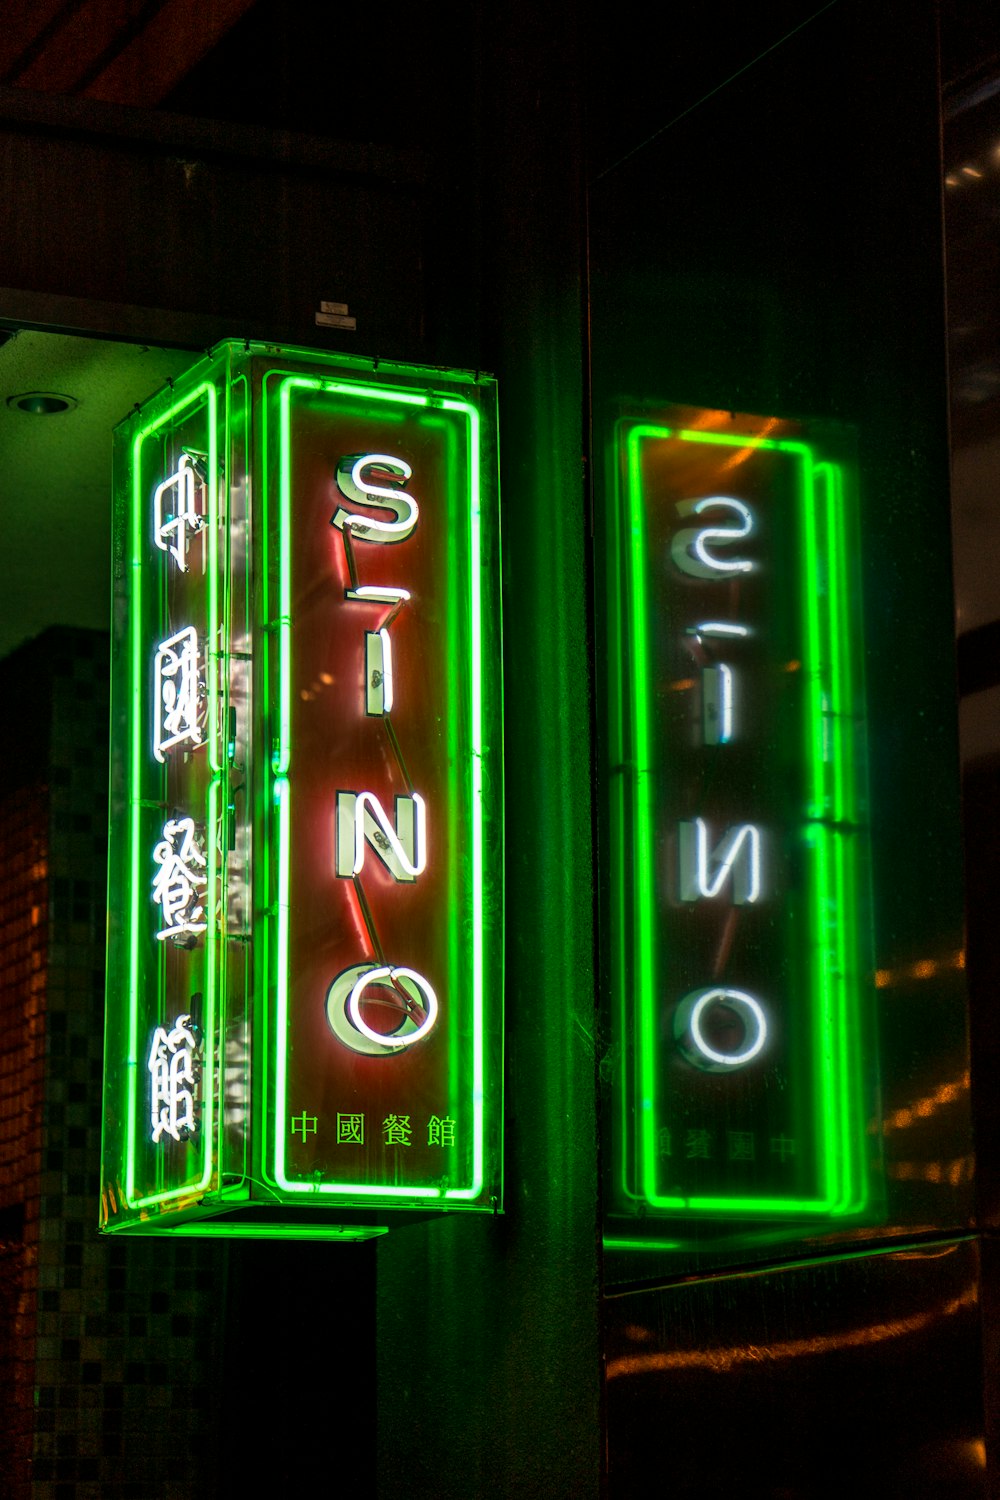 Insegne al neon sinogene durante le ore notturne